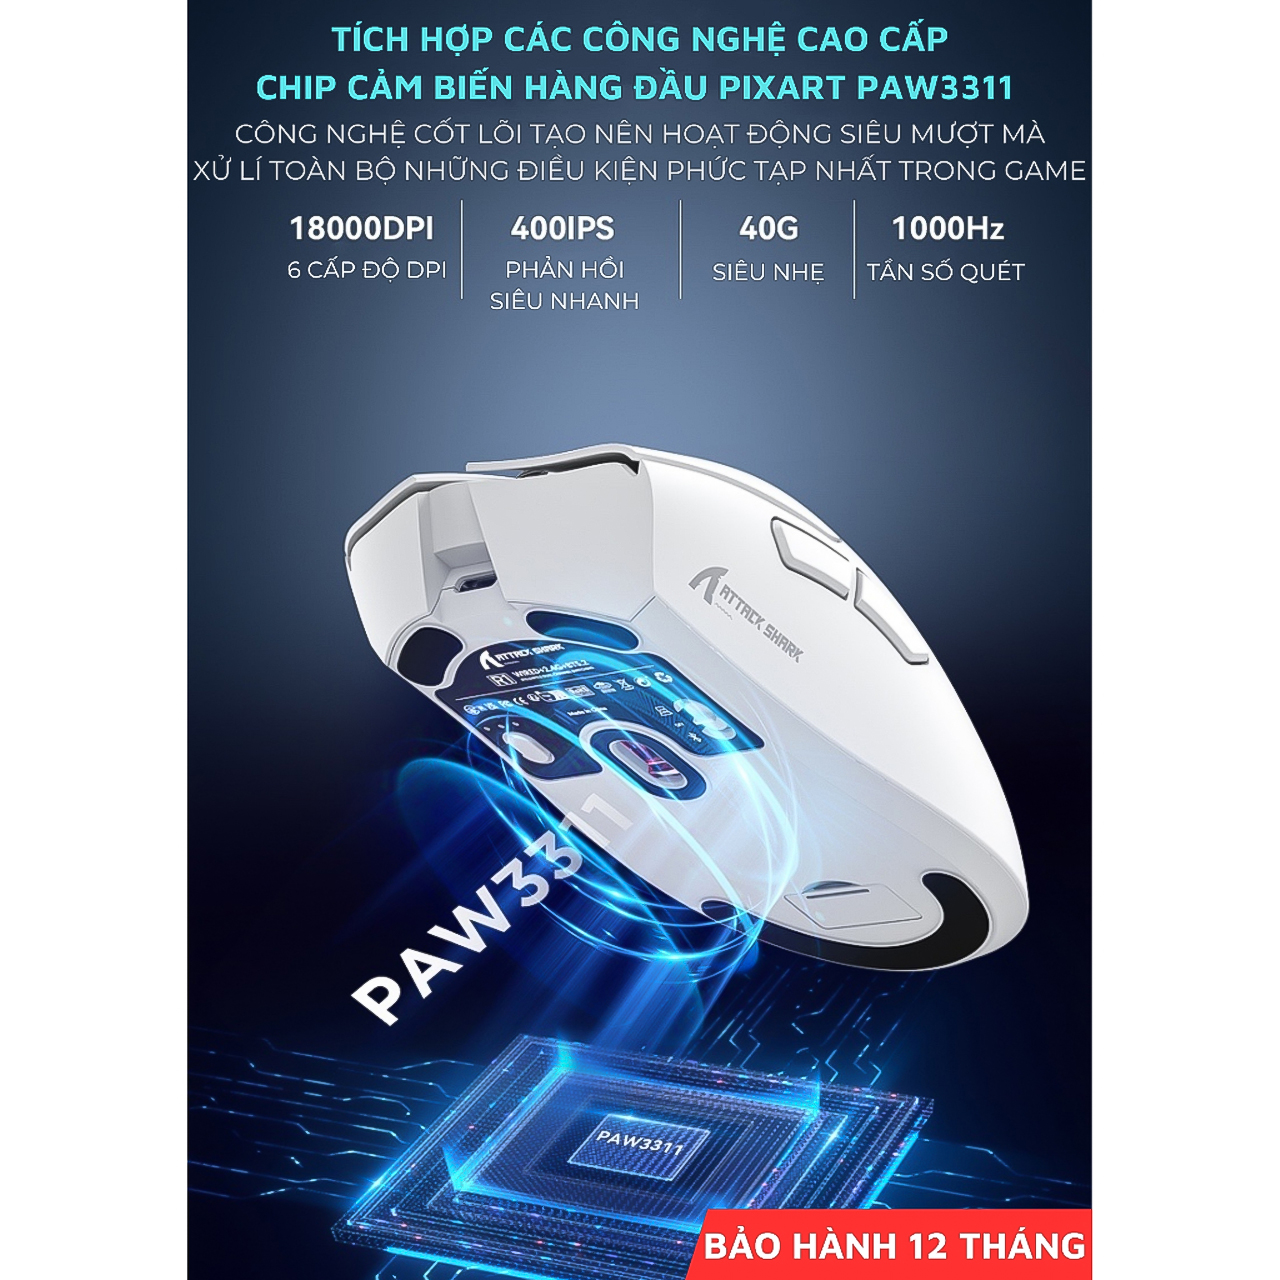 Chuột Không Dây Bluetooth Chip PAW3311 Vinetteam Attack Shark R1 18000DPI 3 Mode Có App Chỉnh Macro Pin Sạc - hàng chính hãng